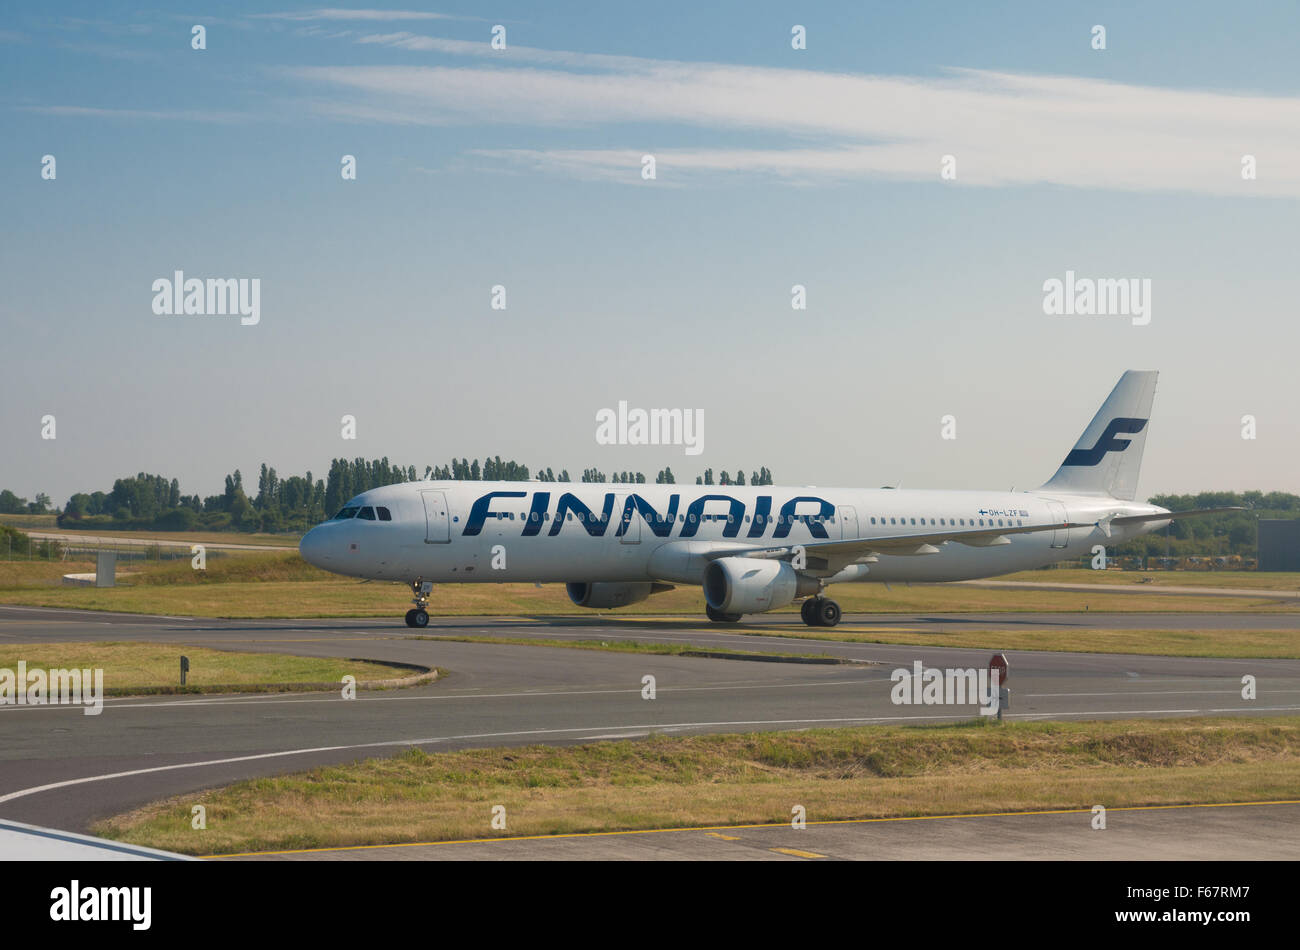 PARIS - 11. Juni 2015: Finnair Flugzeug Landung am Flughafen Roissy Charles de Gaulle International Airport (CDG). Finnair ist die fünfte oldes Stockfoto